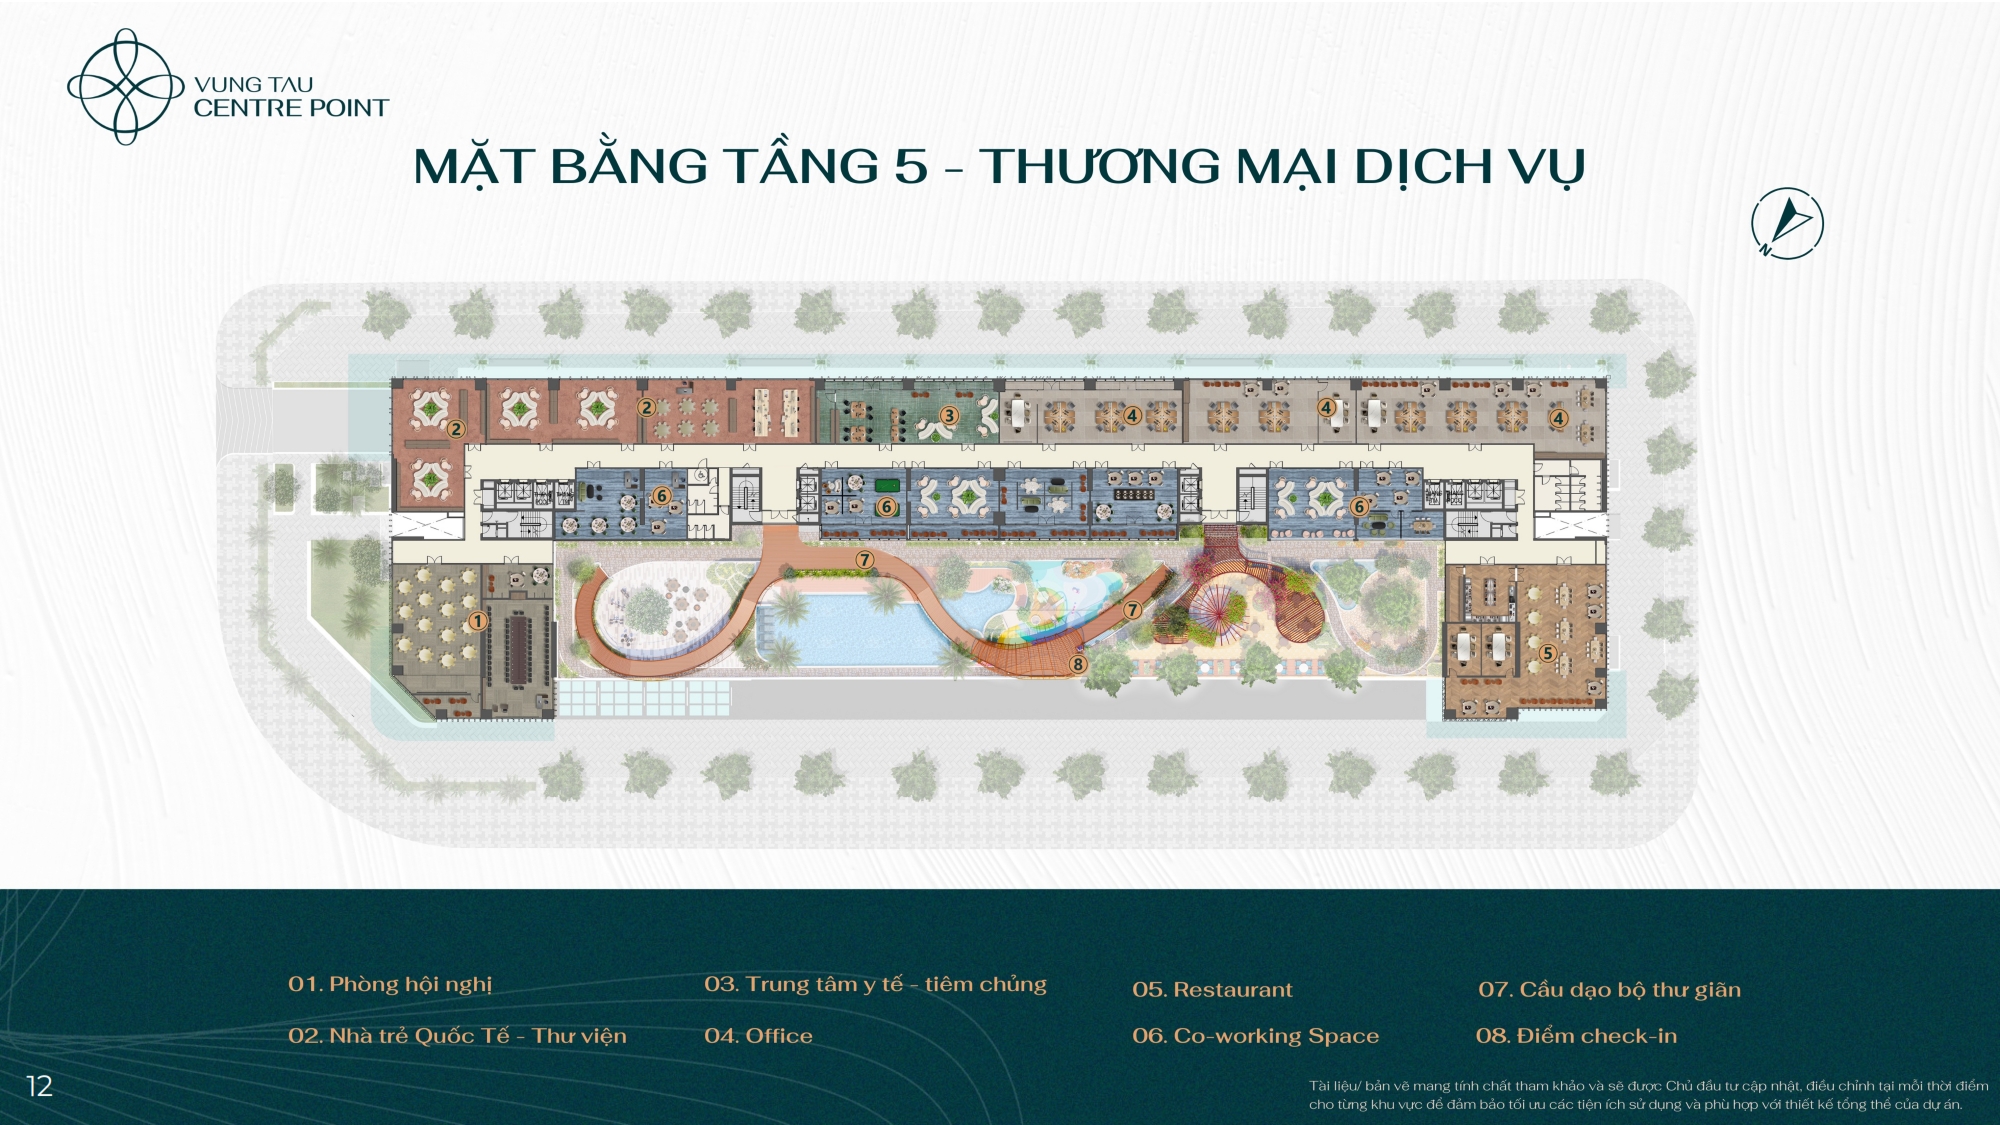 Mat bang Tang 5 Thuong mai dich vu Vung Tau Centre Point - Vũng Tàu Centre Point